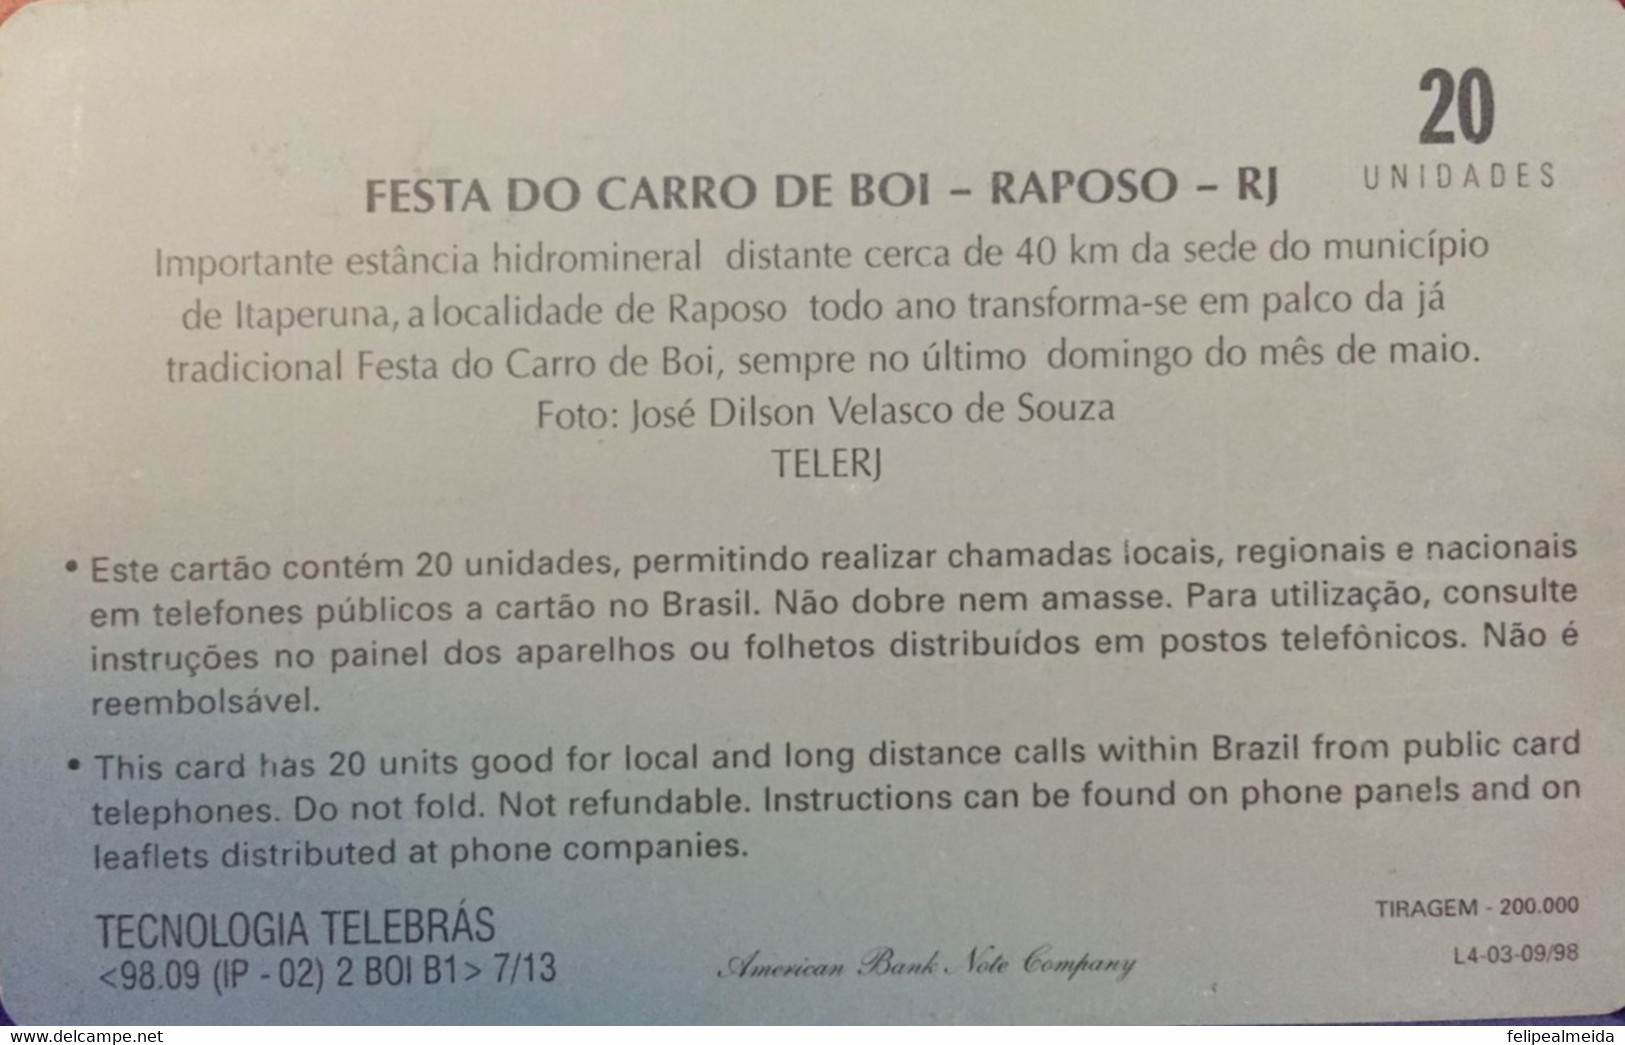 Phone Card Manufactured By Telerj In 1998 - Series Norte Fluminense - Festa Do Carro De Boi In Raposo - Rio De Janei - Cultura